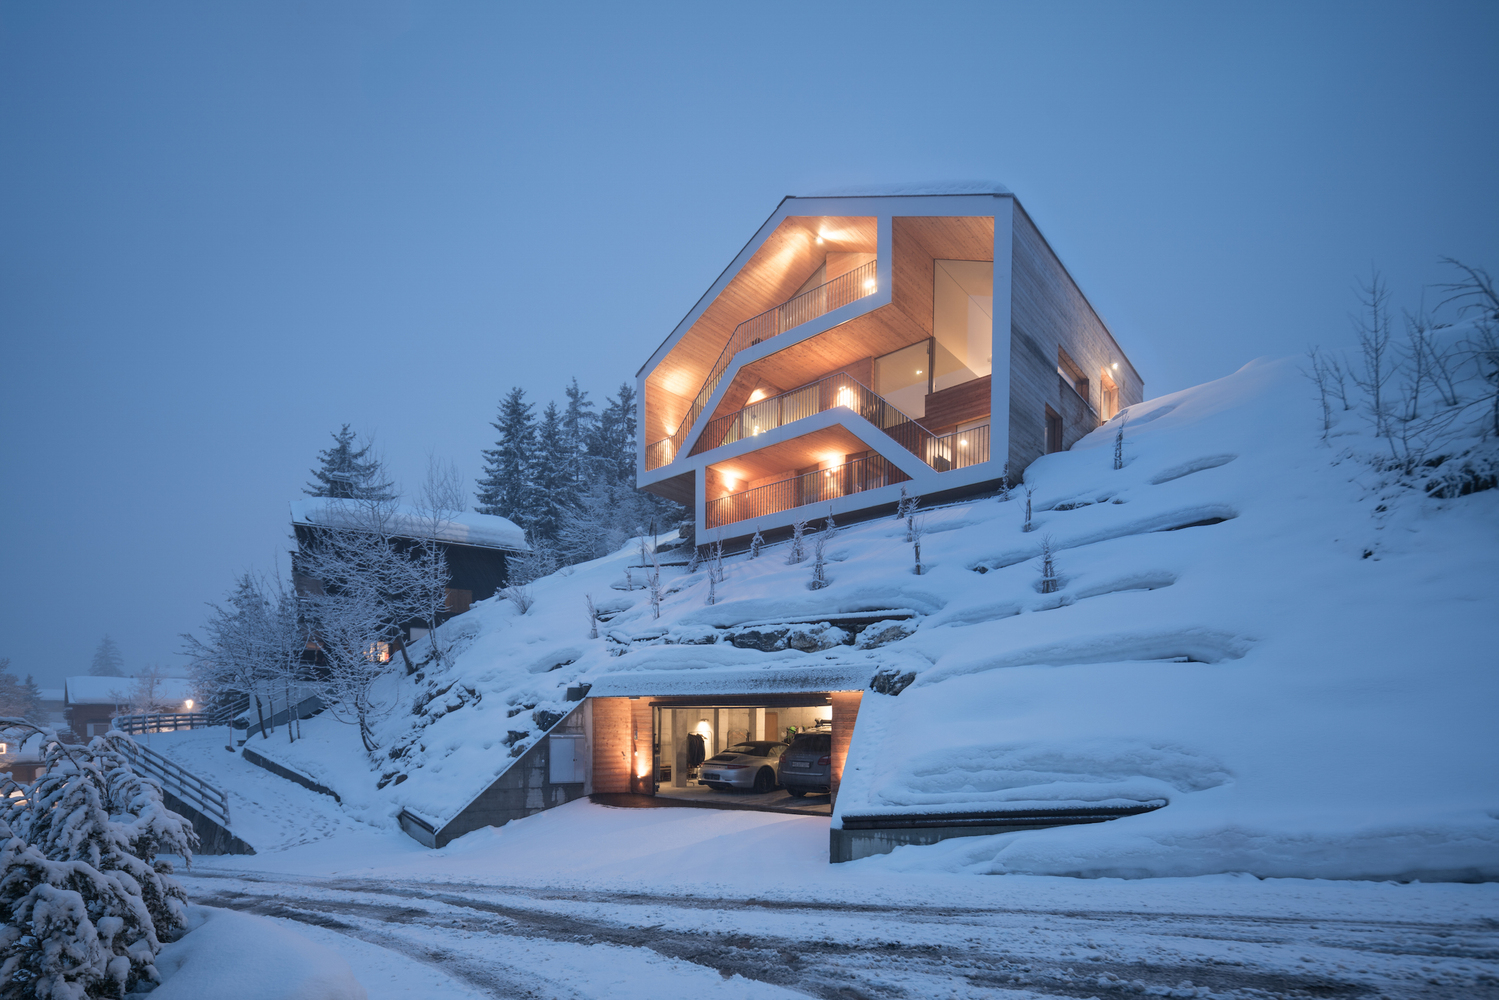 Modern House Cabin Snow Winter Architecture Garages 1499x1000